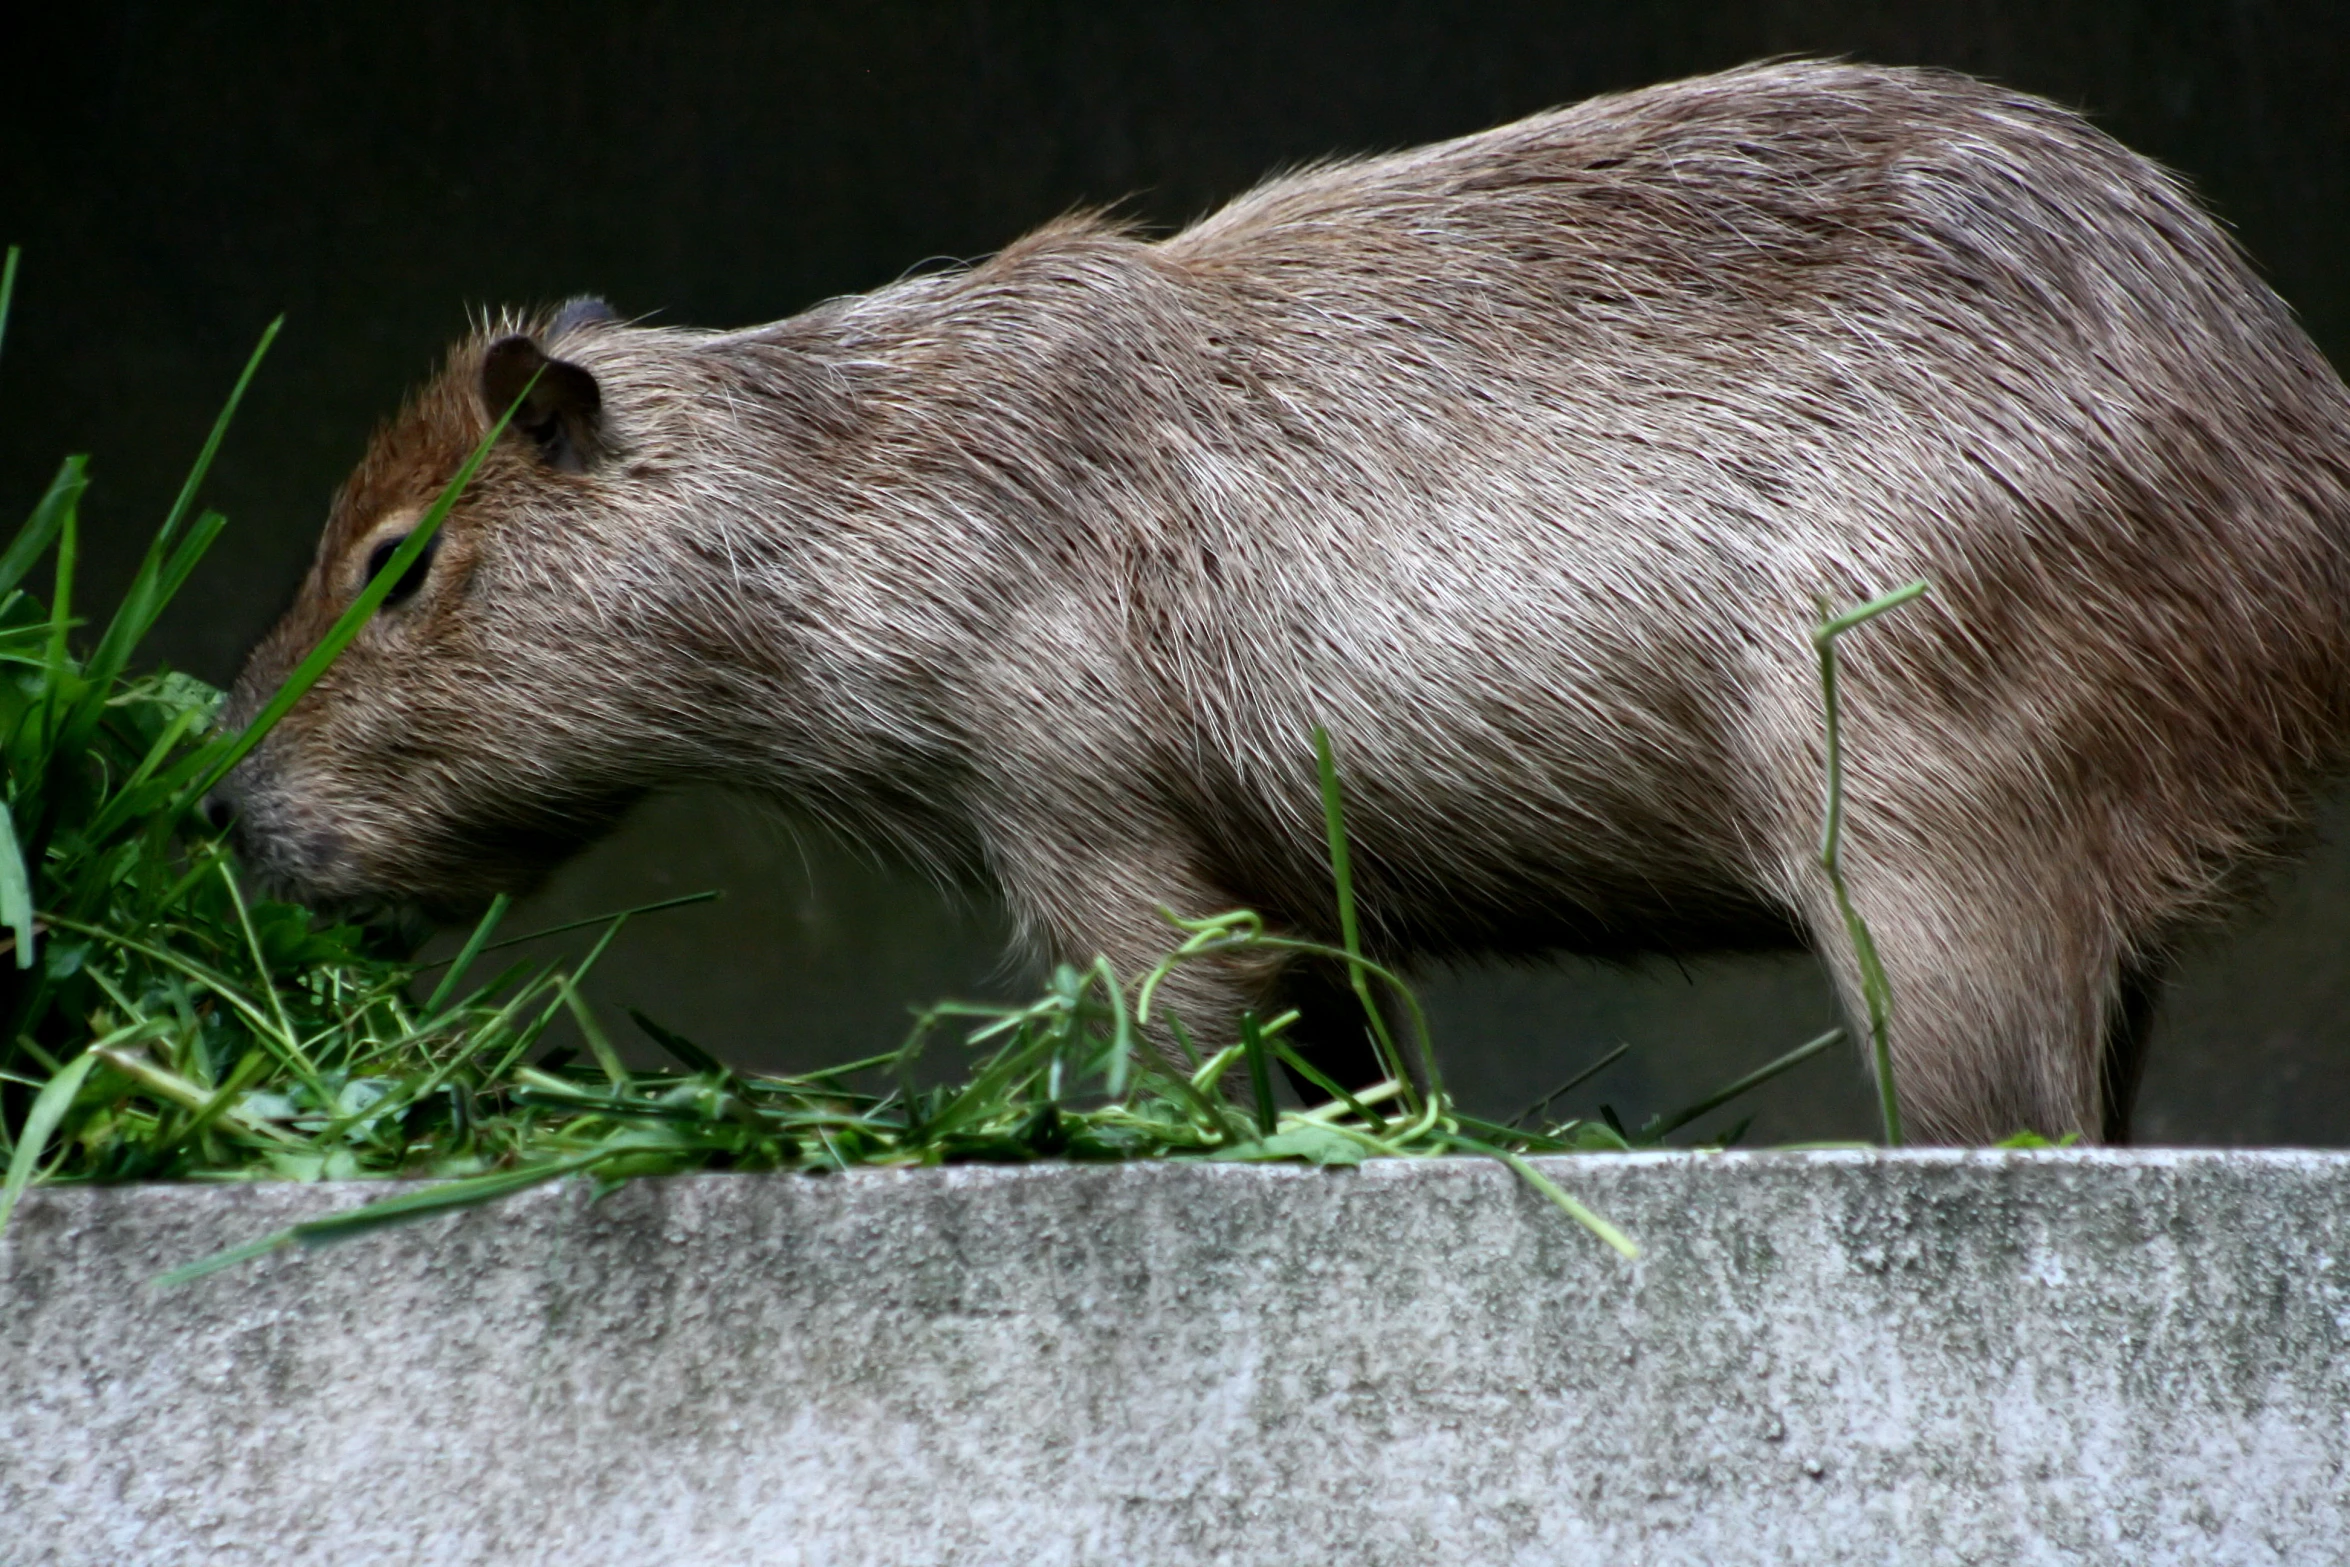 a capybara walking in a green grass field